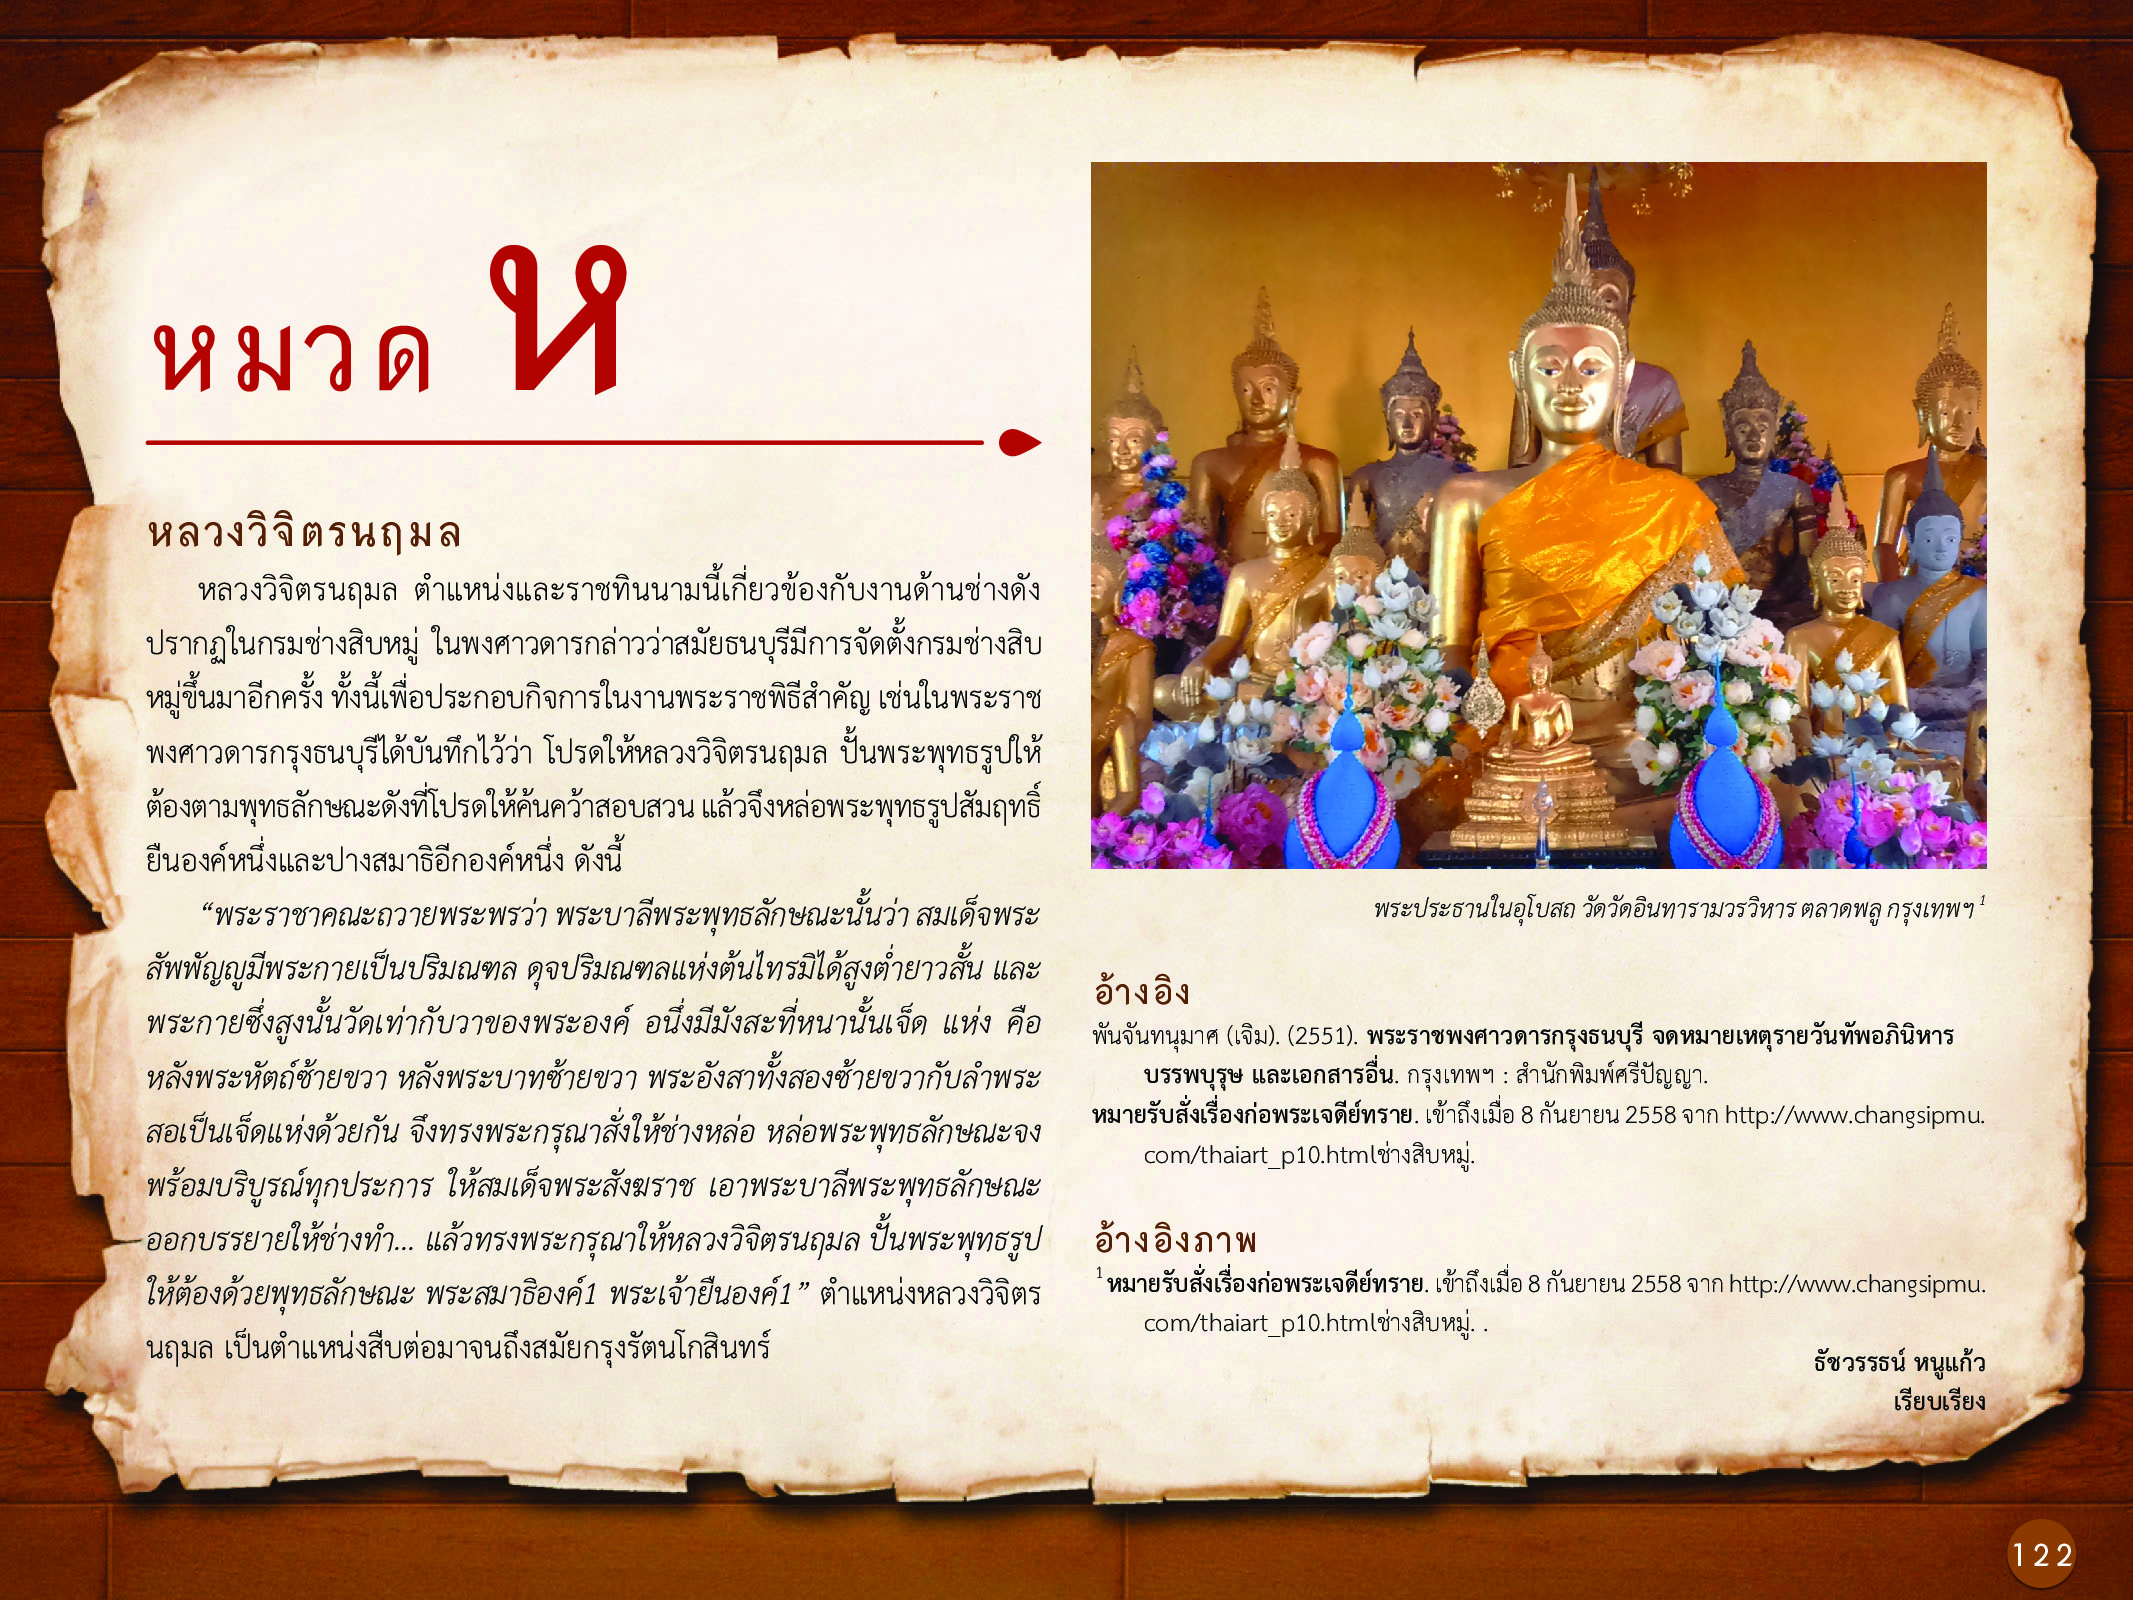 ประวัติศาสตร์กรุงธนบุรี ./images/history_dhonburi/122.jpg